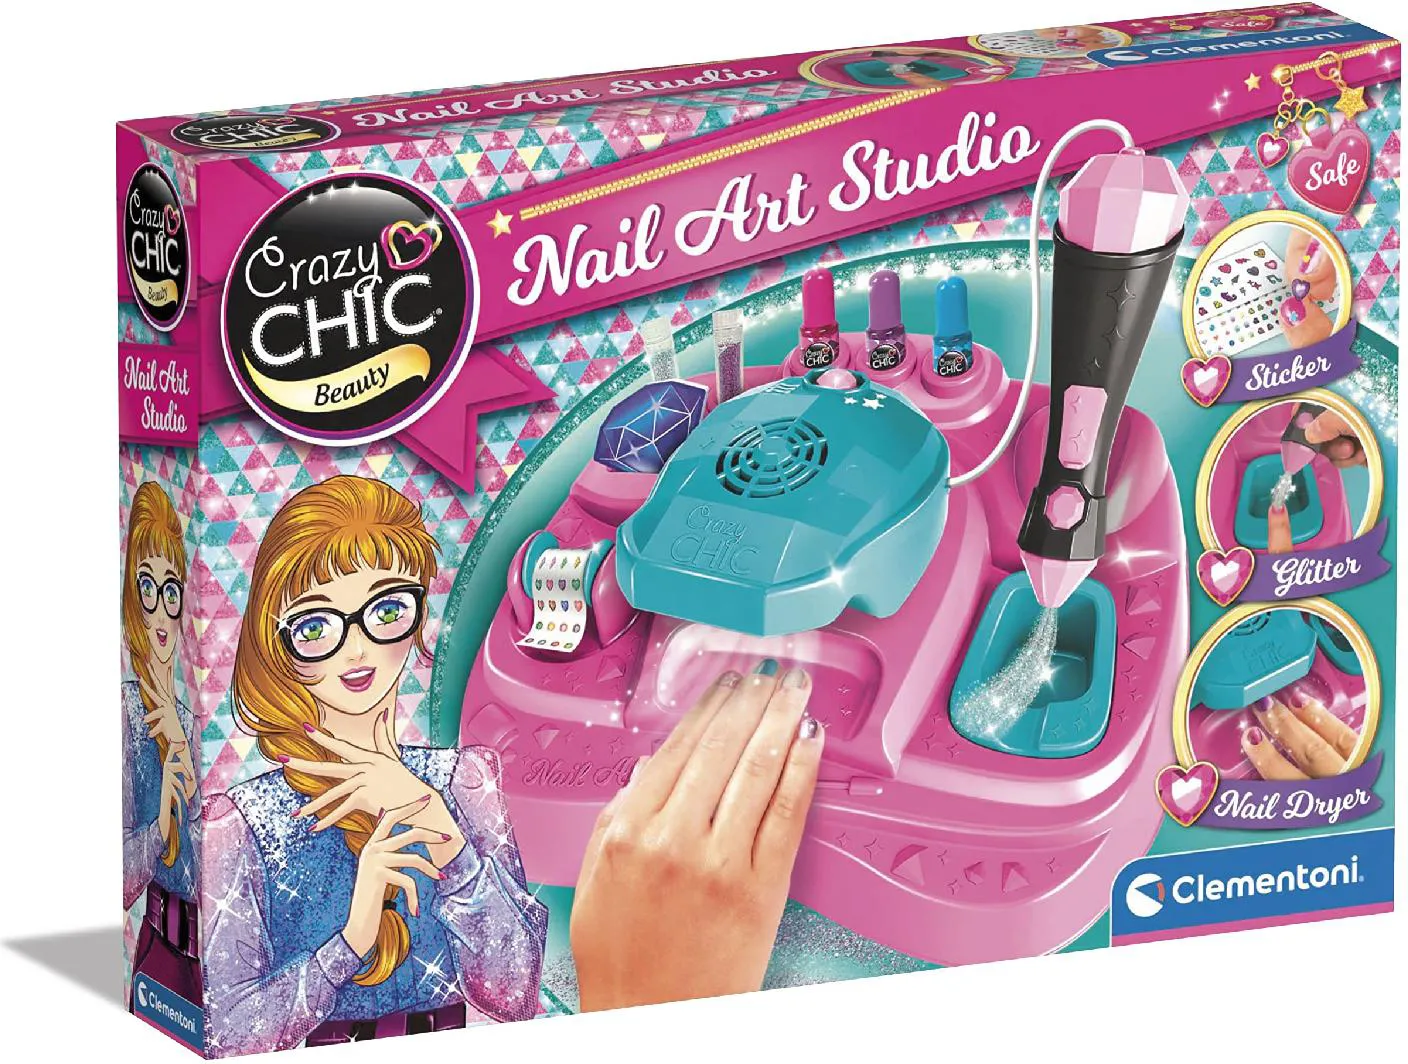 Clementoni Crazy Chic Nail Art Studio - Atelier per Unghie con Smalti e Kit  Decorativo Gioco Creativo Giocattolo per Bambina da 6+ Anni - 18730